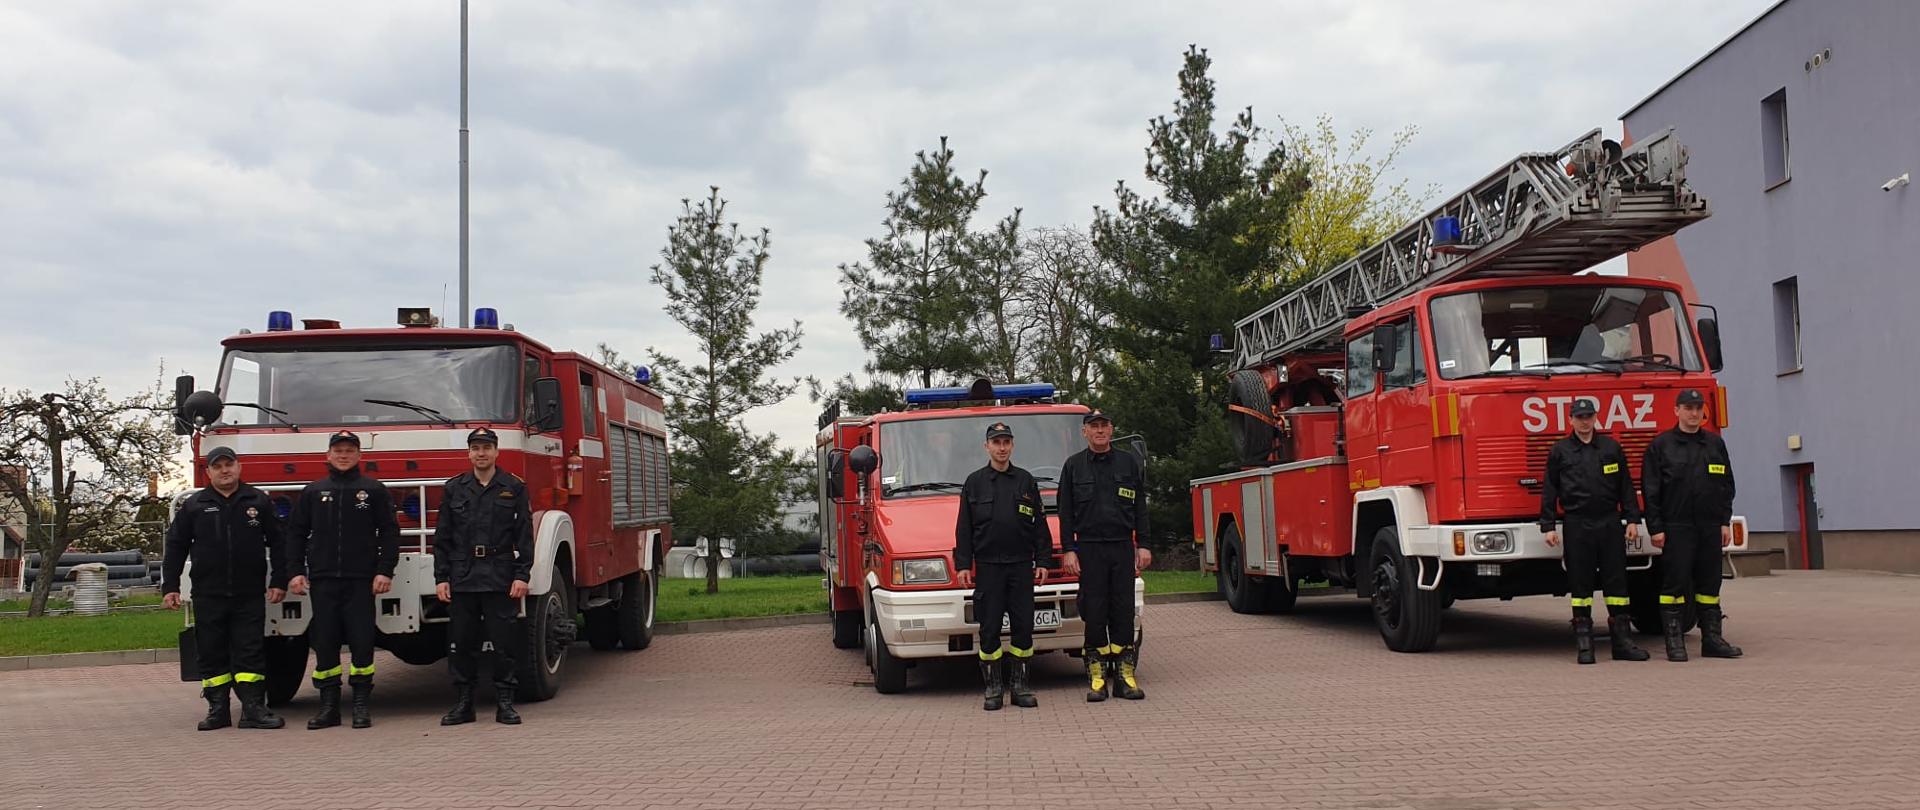 Na zdjęciu przekazywane 3 strażackie samochody wraz ze strażakami 